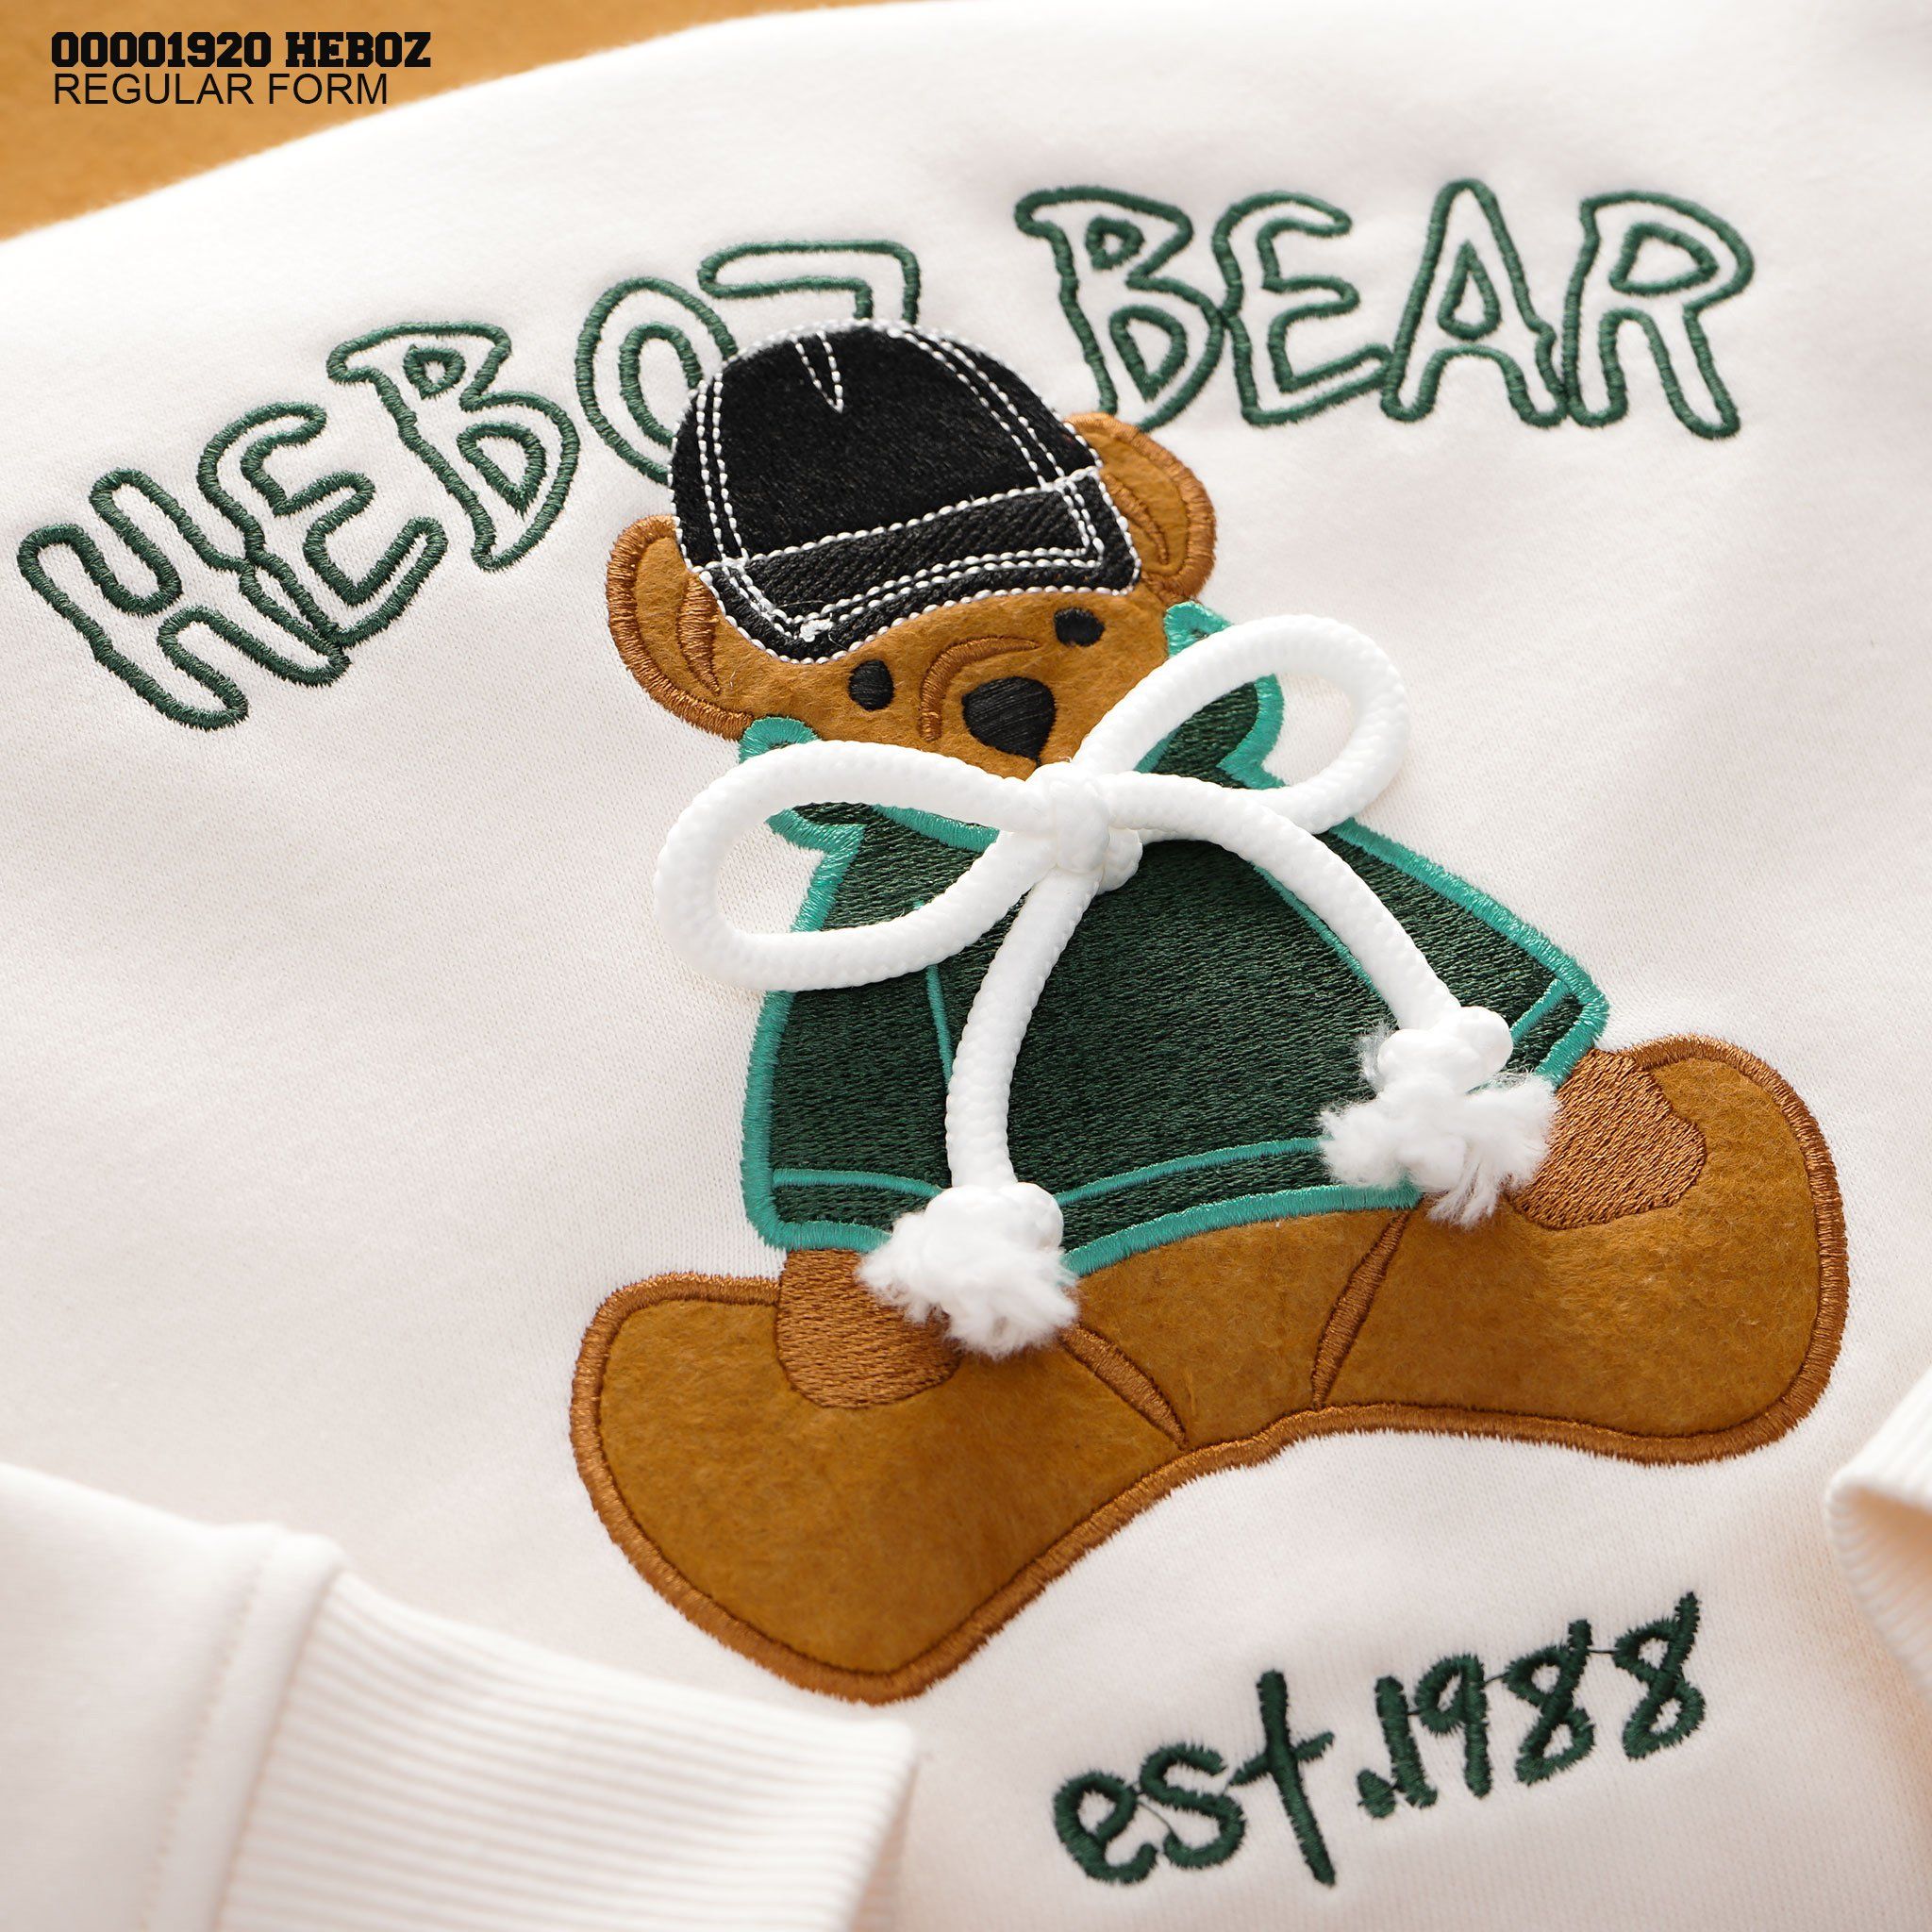  Áo sweater thêu 3D bear Heboz 4M - 00001920 